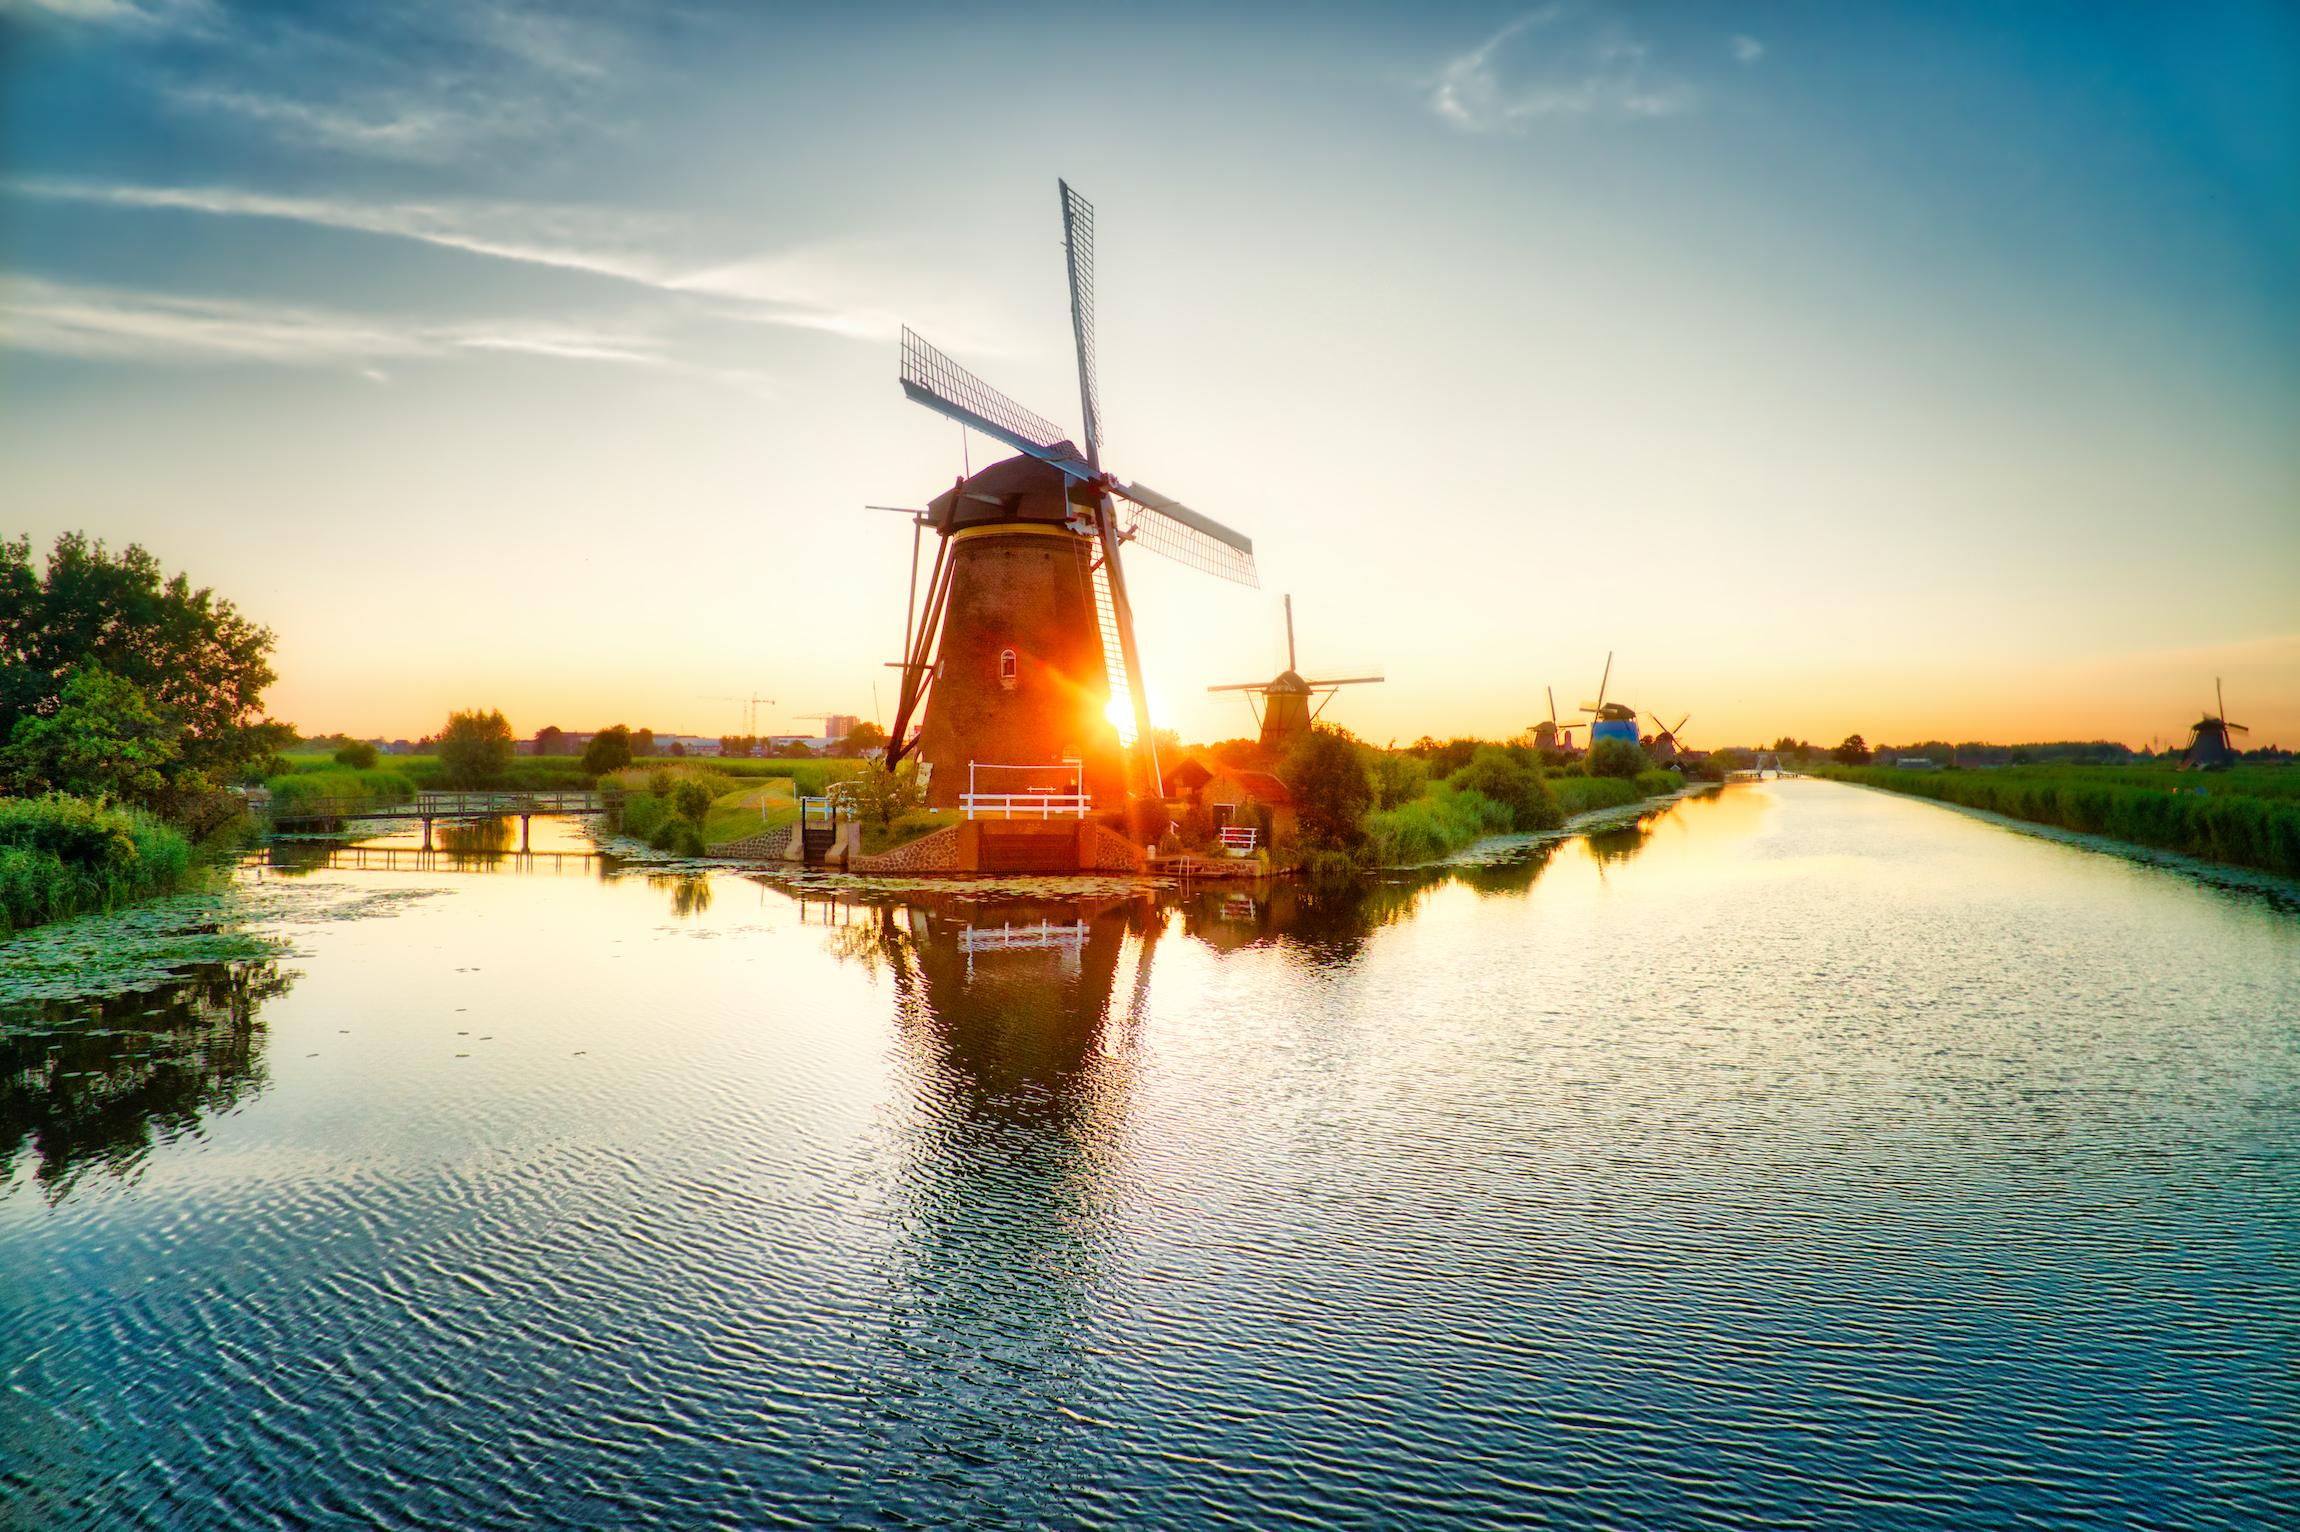 Widok z lotu ptaka na tradycyjne wiatraki o zachodzie słońca w Kinderdijk w Holandii. Ten system 19 wiatraków został zbudowany około 1740 roku i znajduje się na liście dziedzictwa UNESCO.